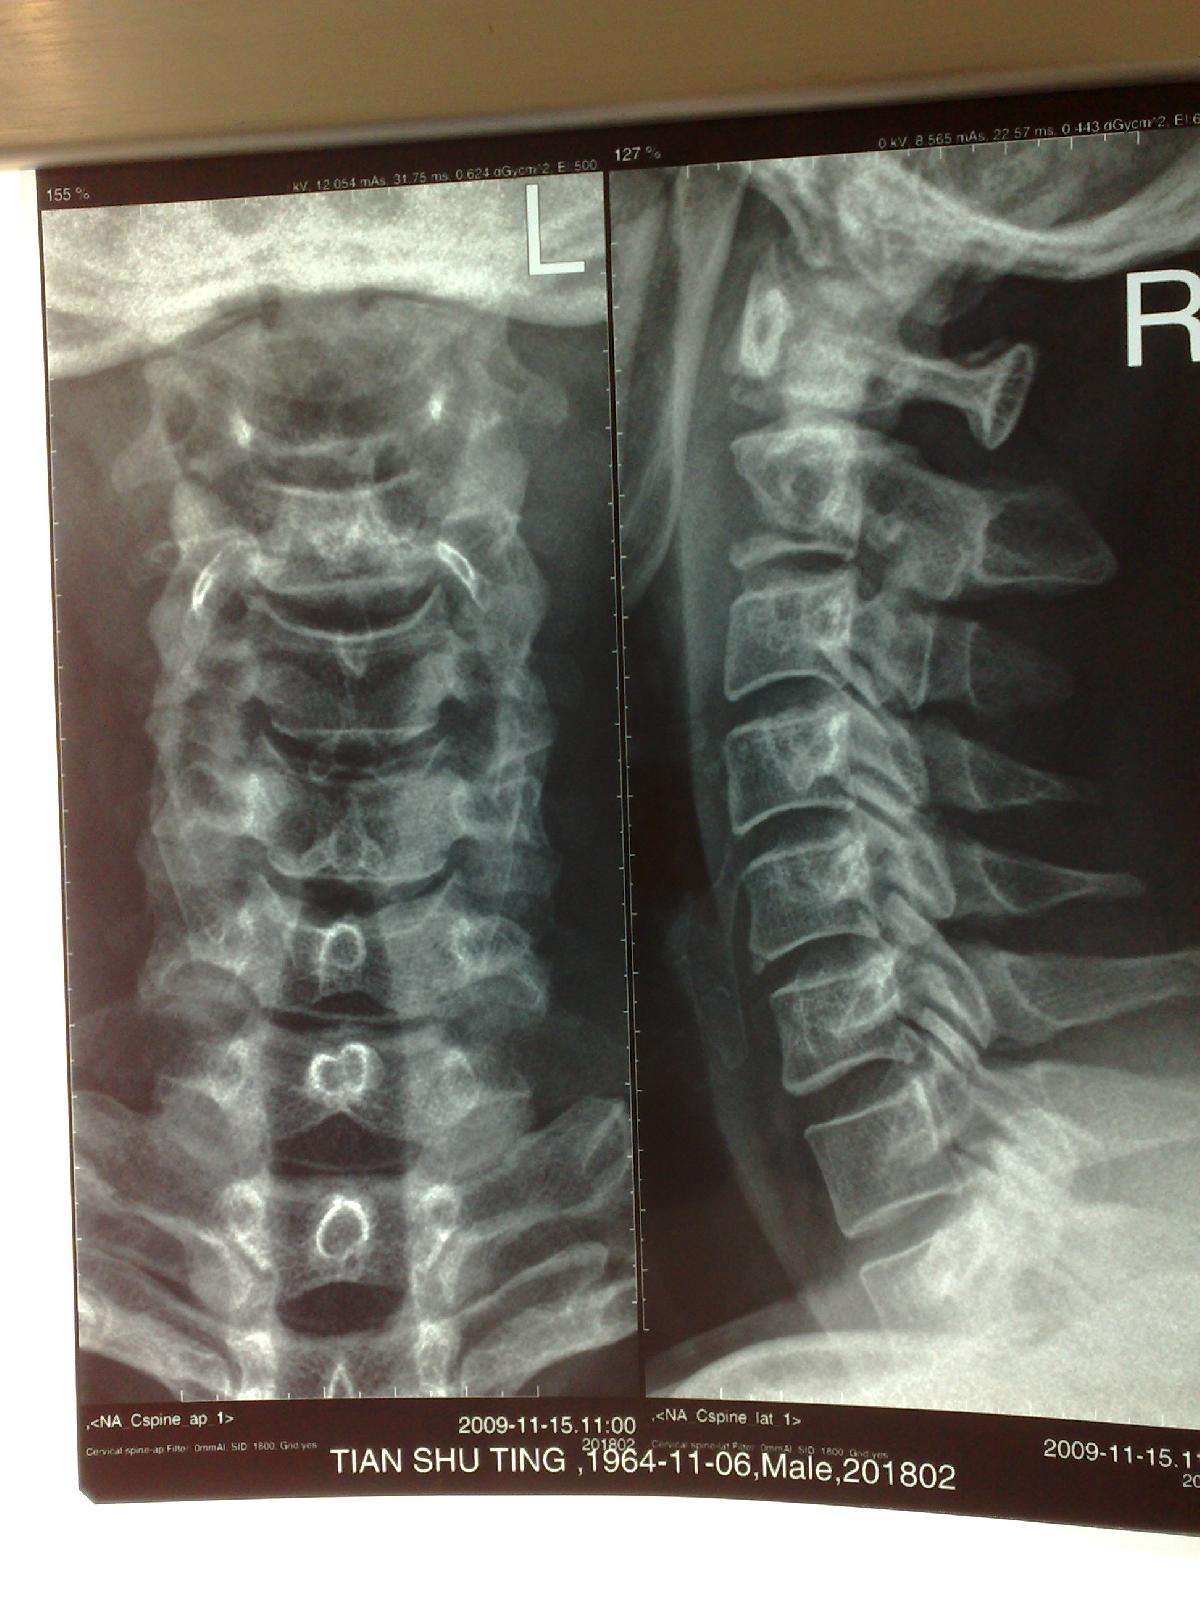 一期后路寰椎侧块枢椎椎板螺钉固定前路病灶清除术治疗枢椎langerhan